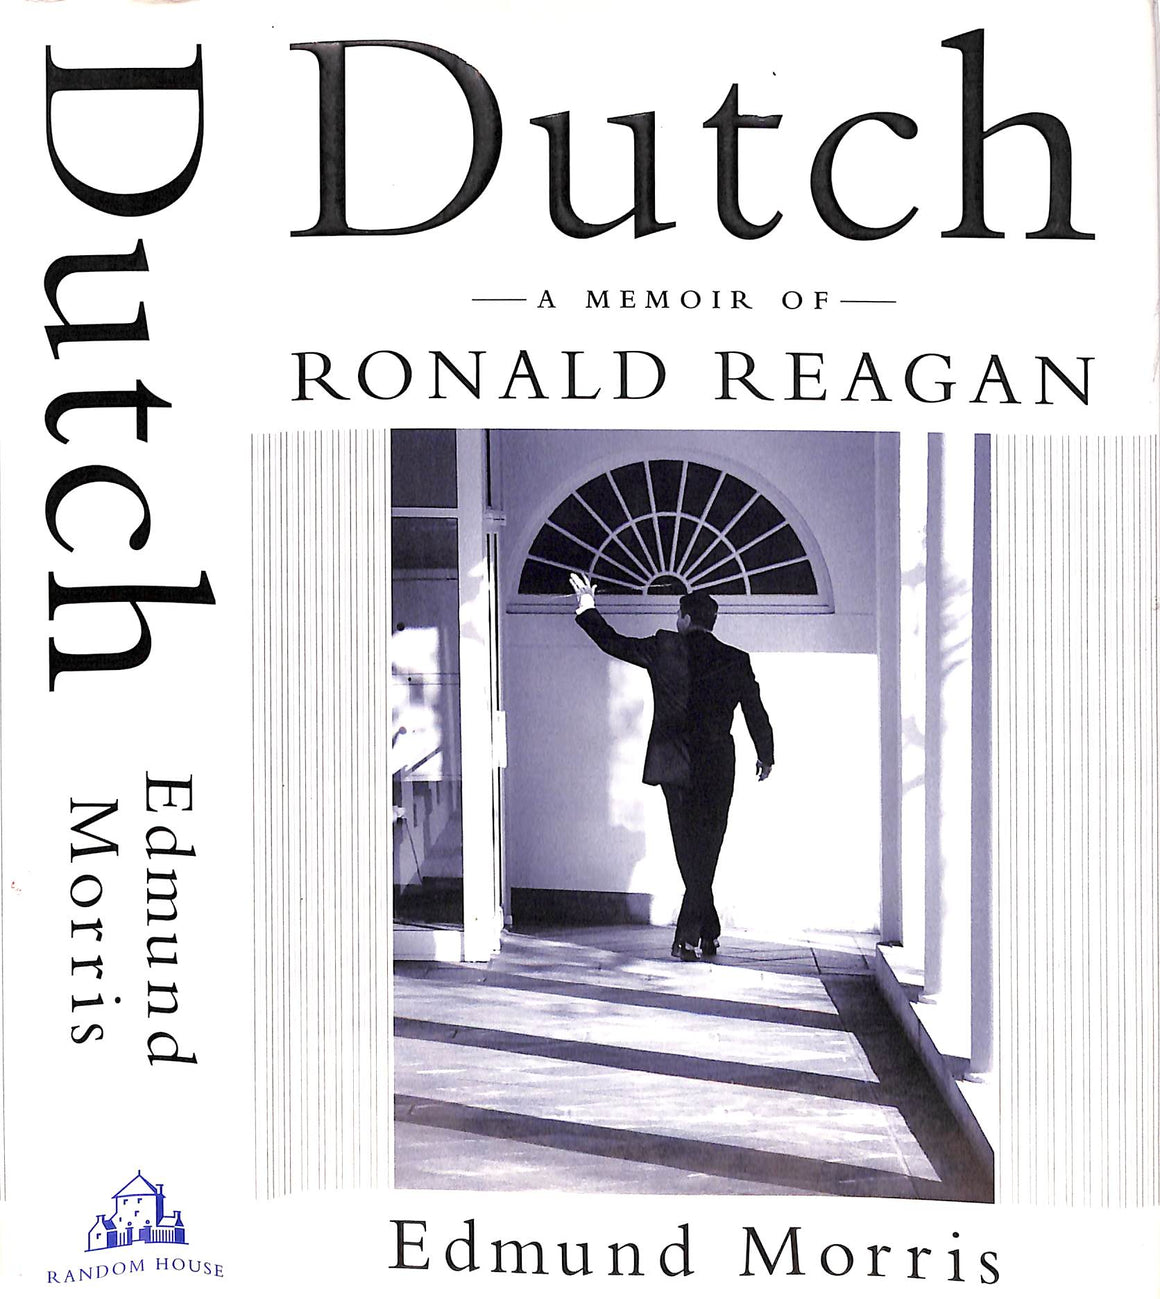 "Dutch: A Memoir Of Ronald Reagan" 1999 MORRIS, Edmund